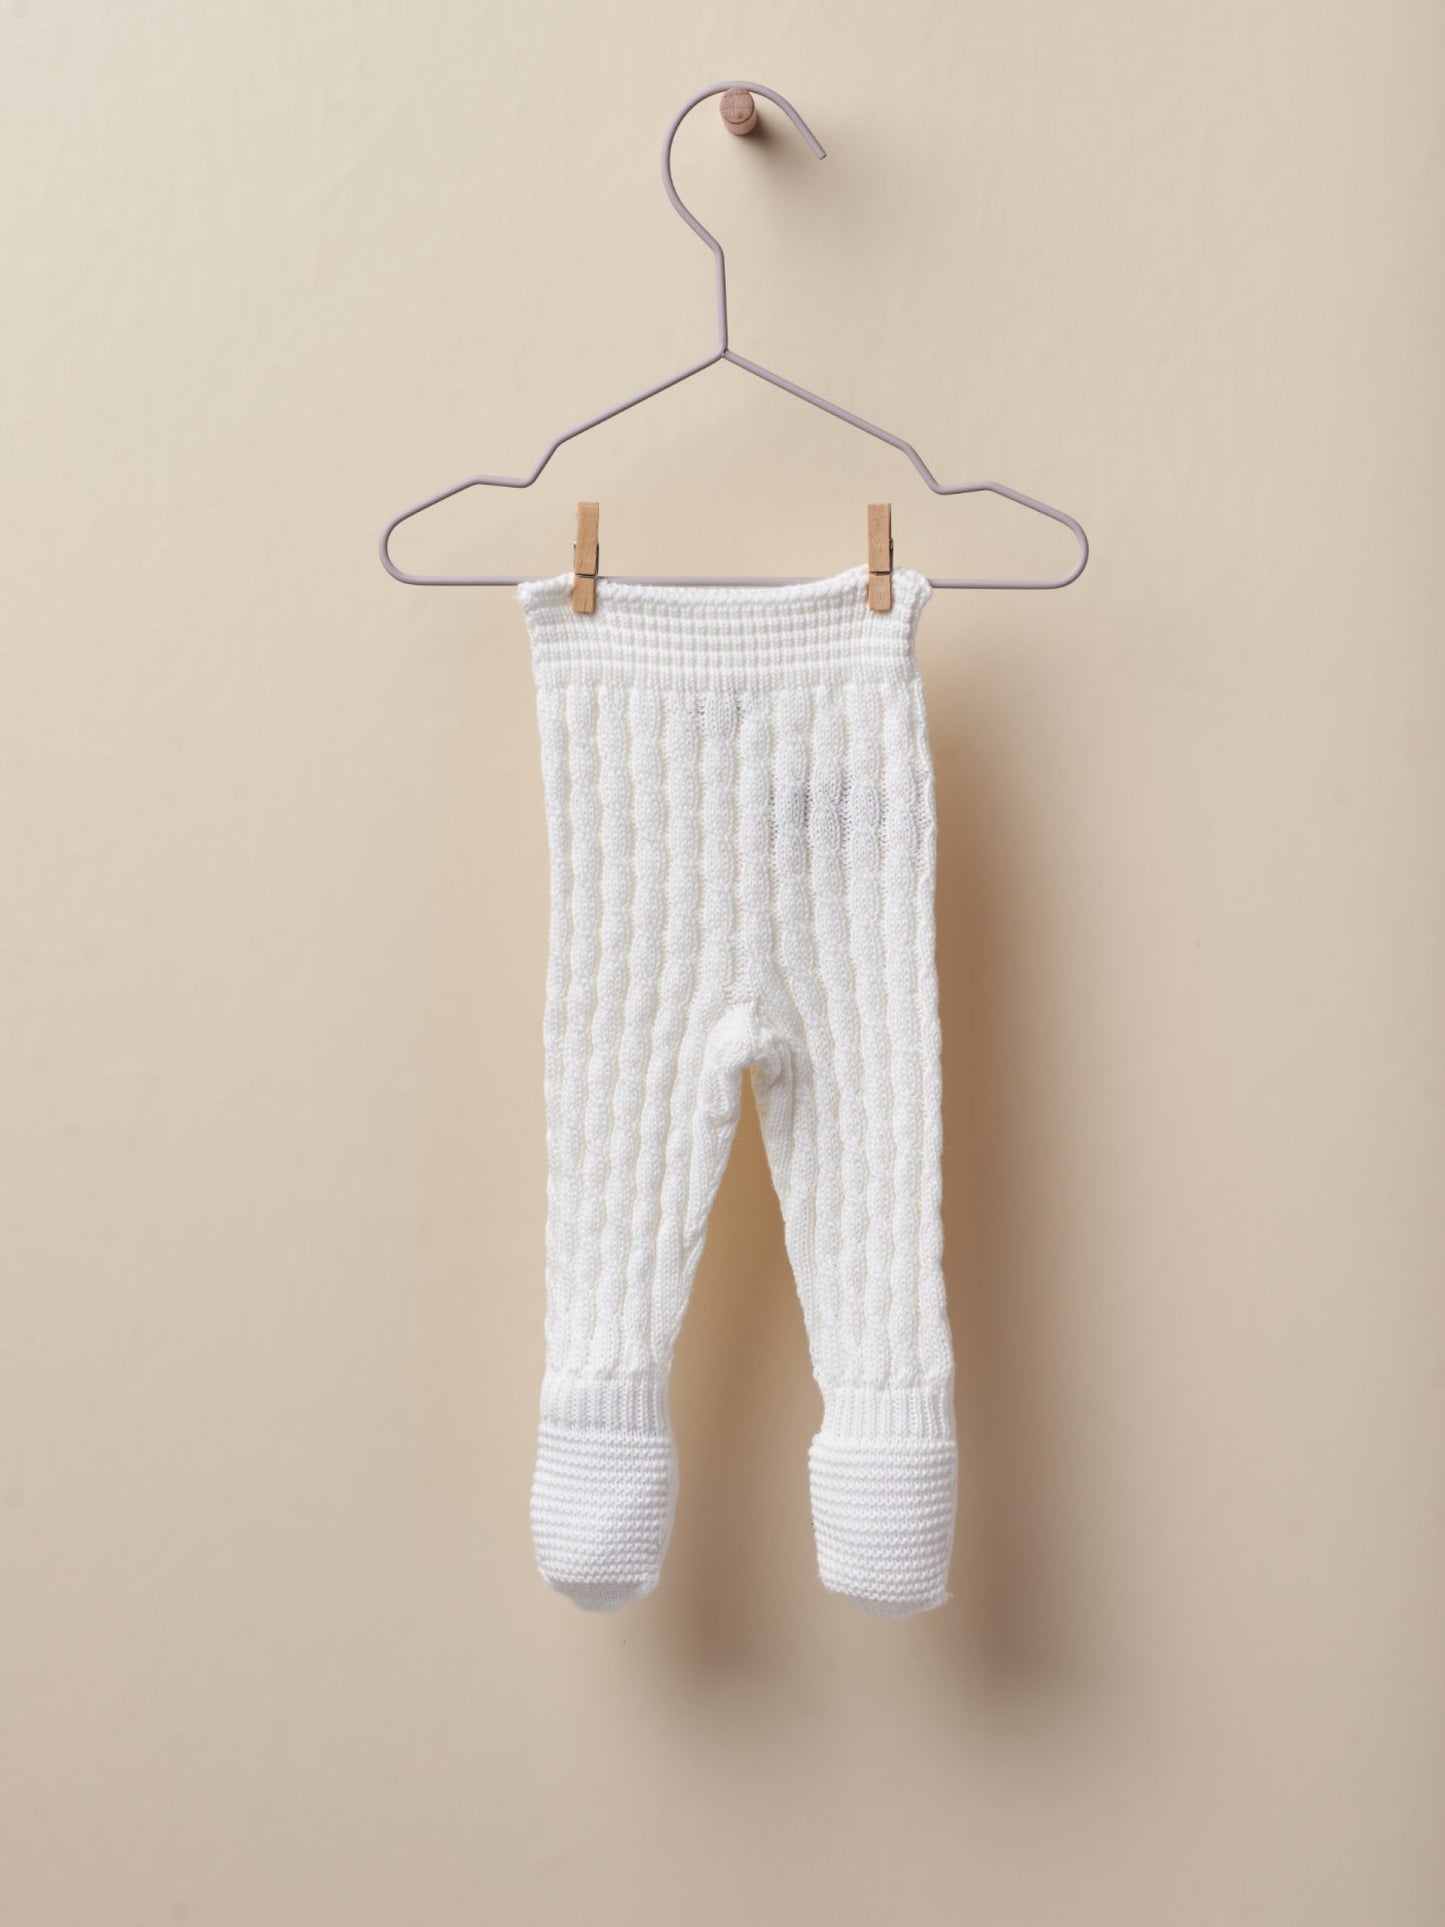 Pantalón con pies tejido en algodón orgánico - WE DOBLE